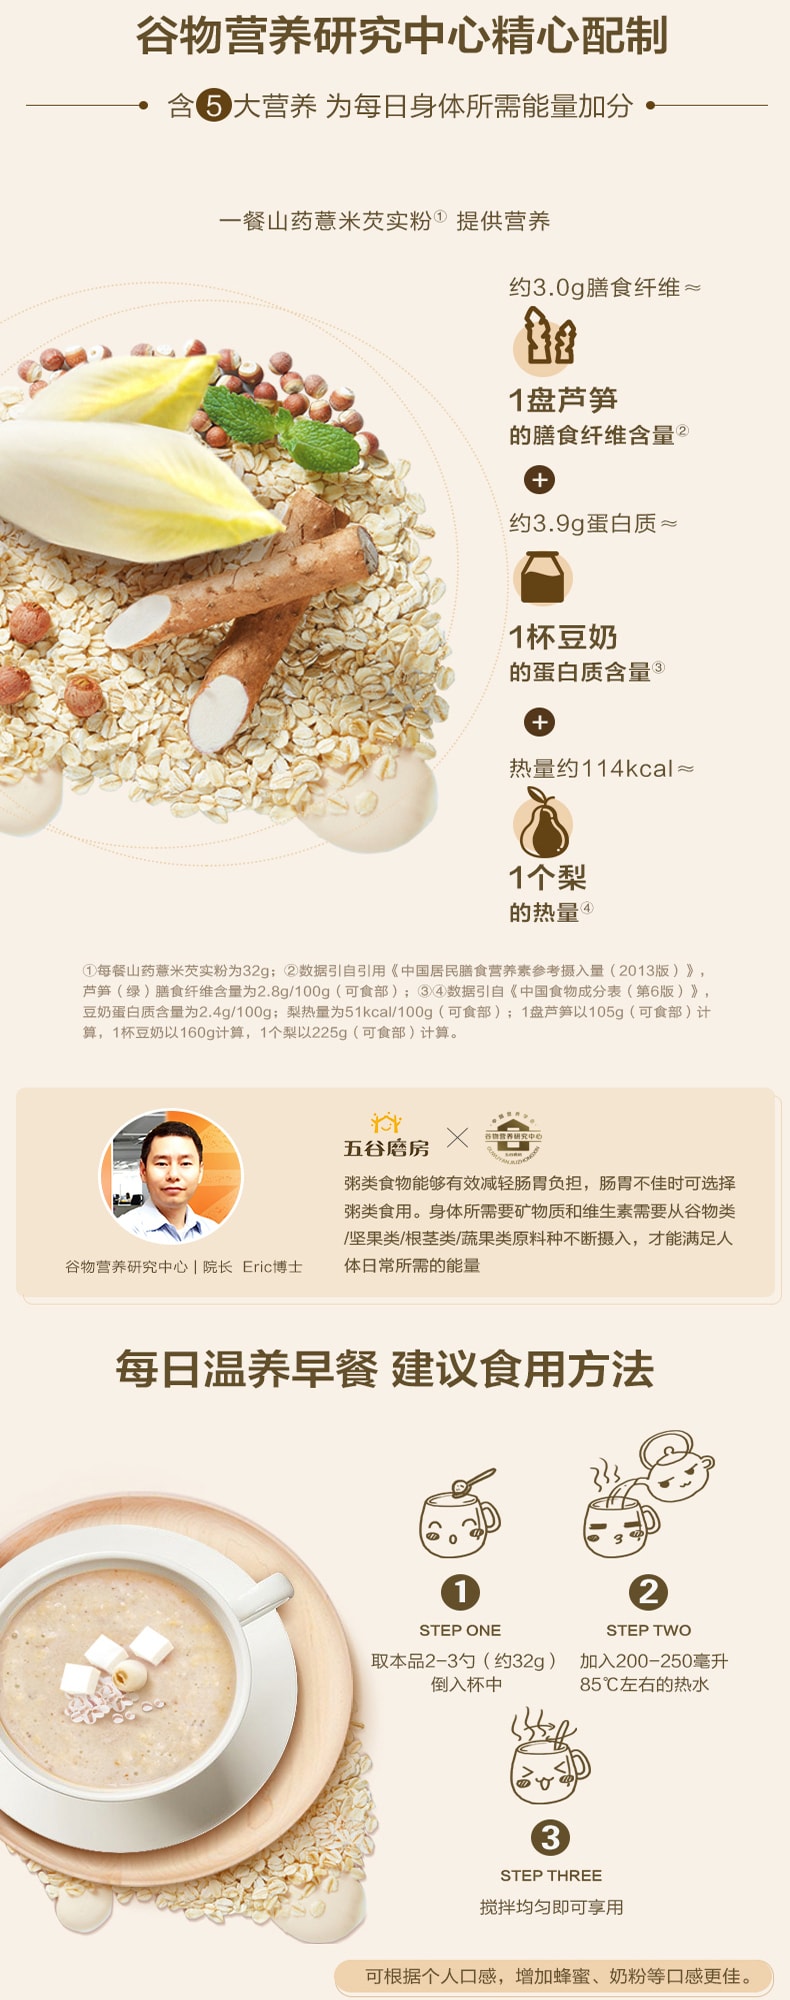 五穀磨房 山藥薏米芡實粉 600g 全新包裝